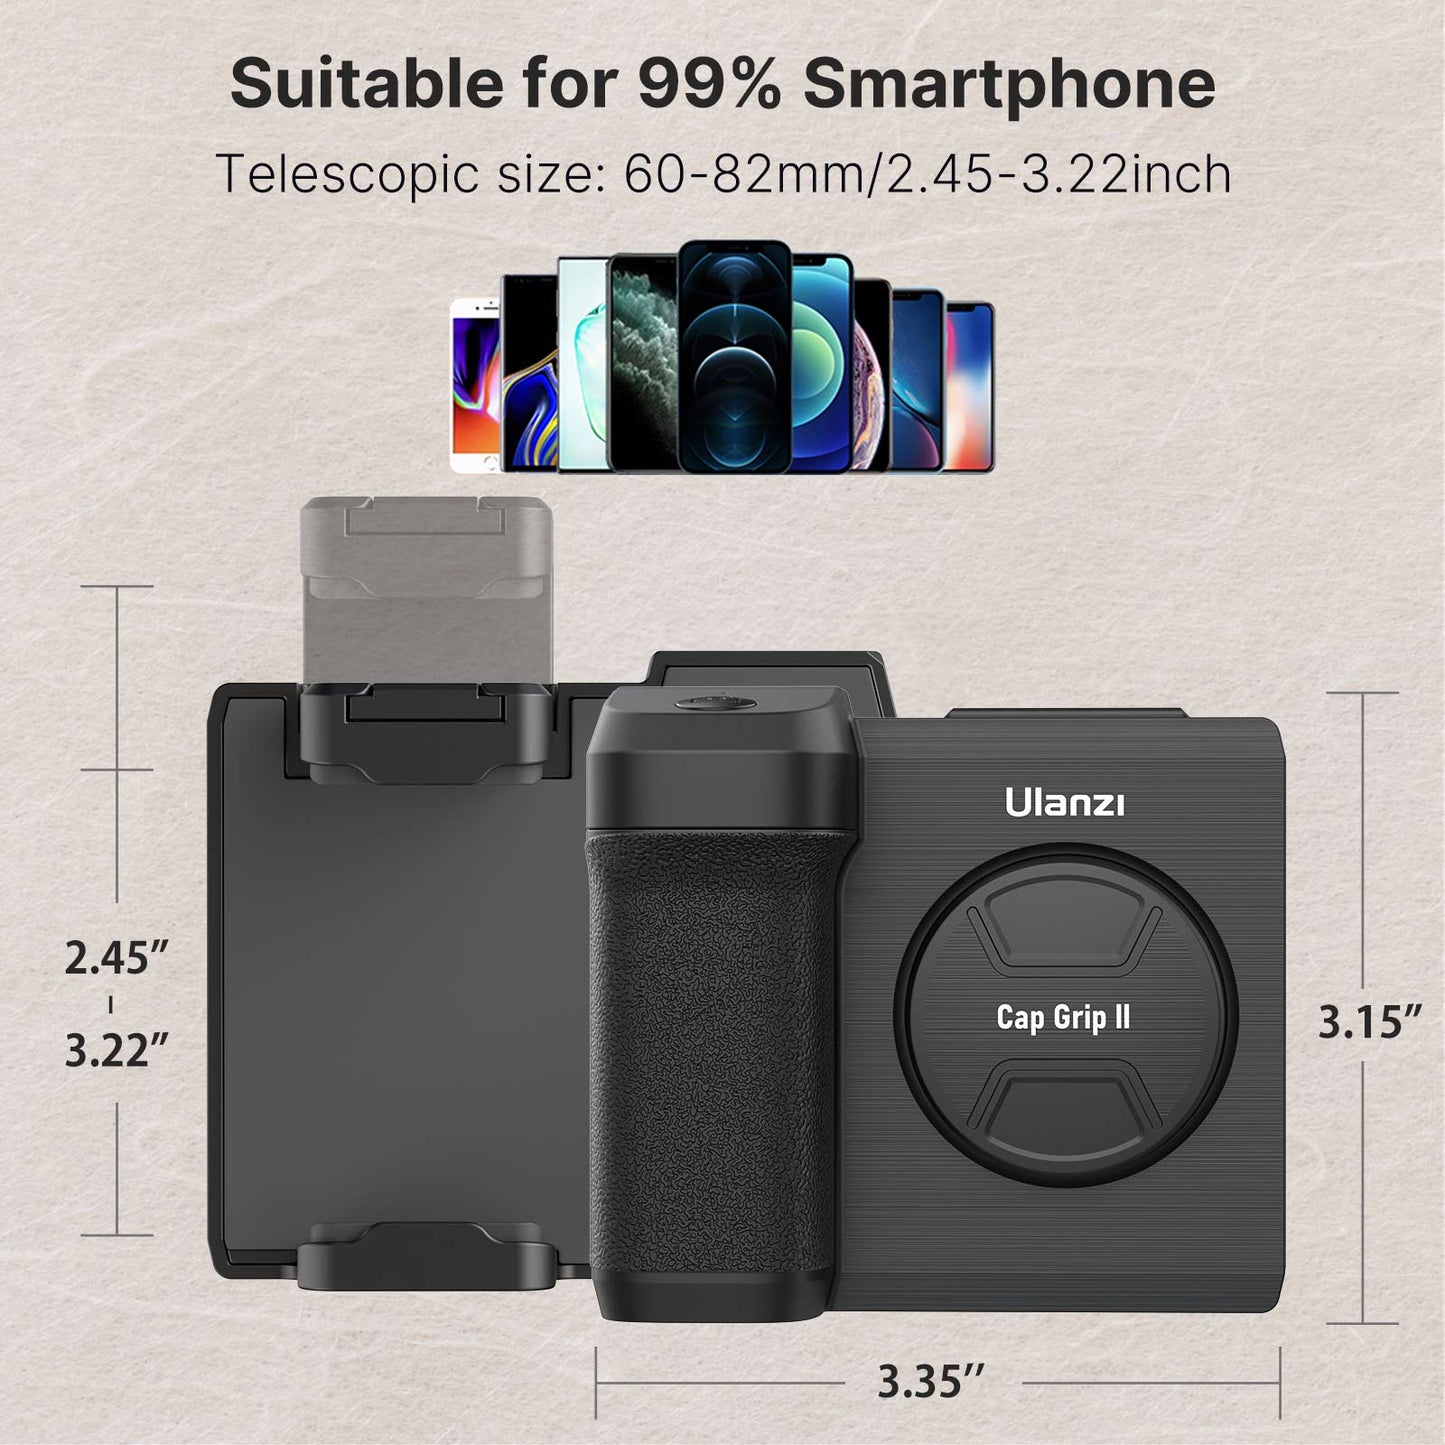 Ulanzi capgrip II - Smartphone handheld selfie booster met bluetooth afstandsbediening - Bivakshop